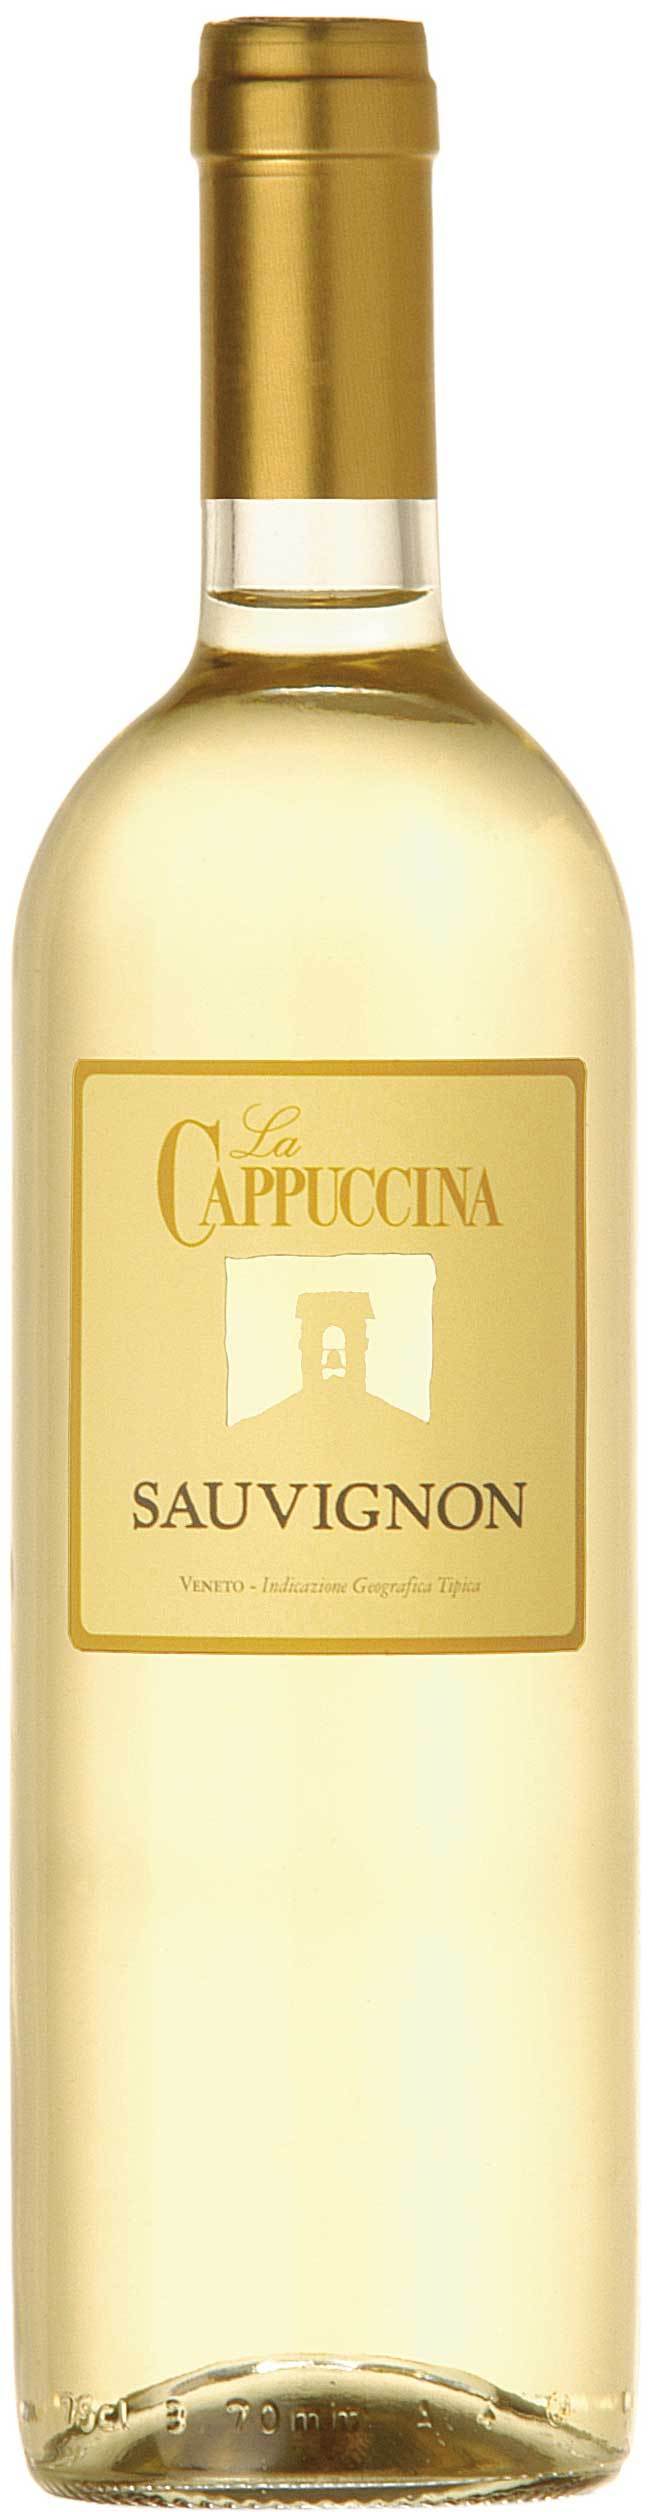 La Cappuccina, Sauvignon Blanc, 2006